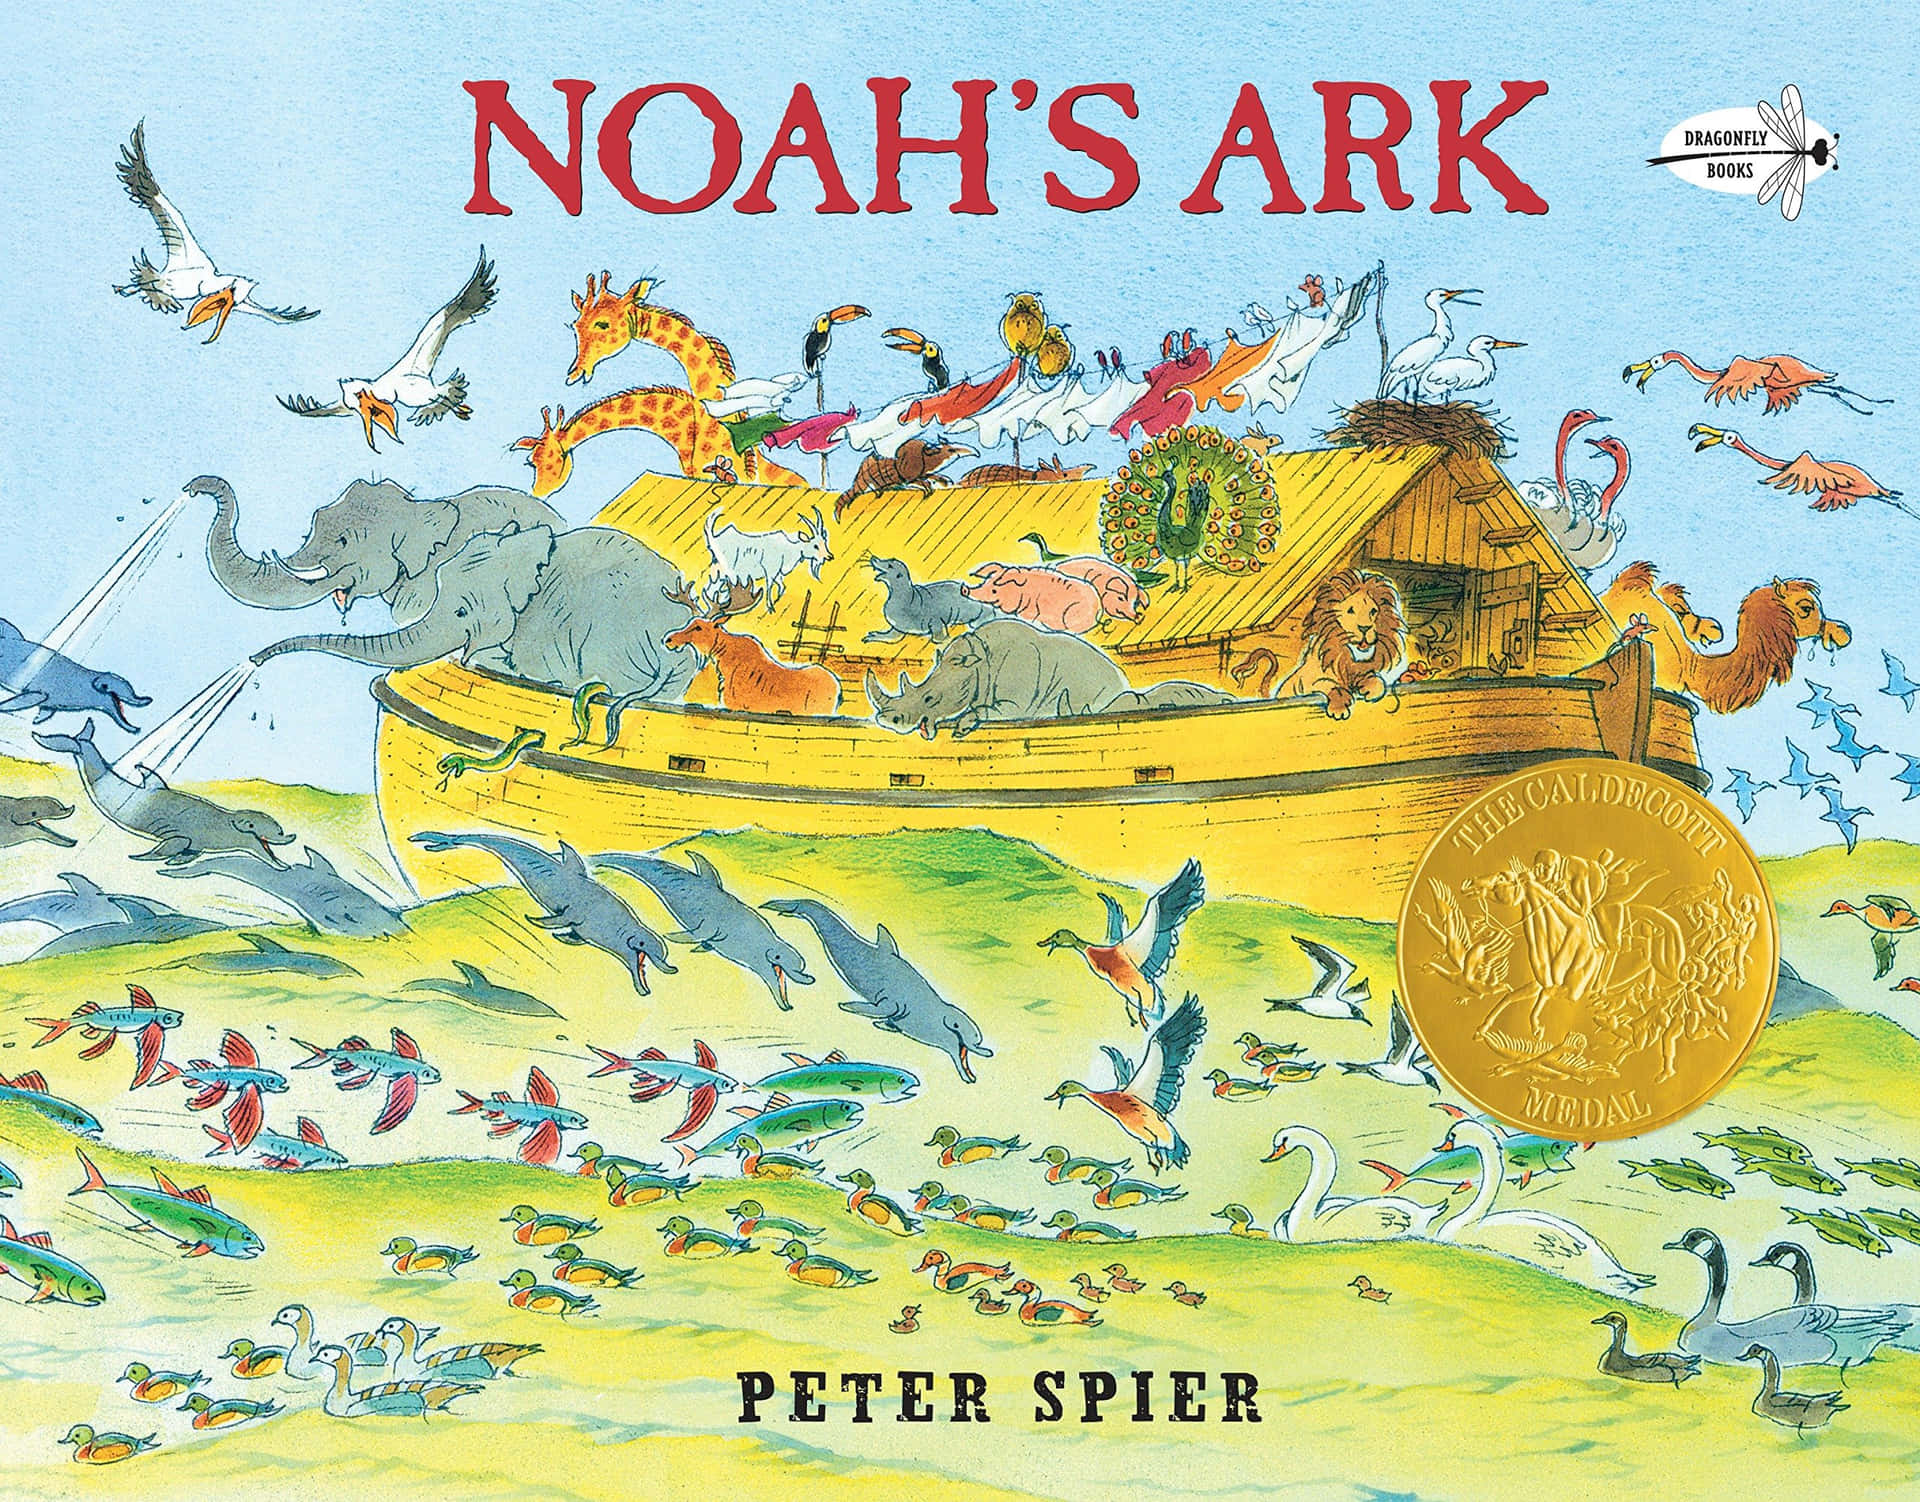 A legendary boat of faith, Noah's Ark